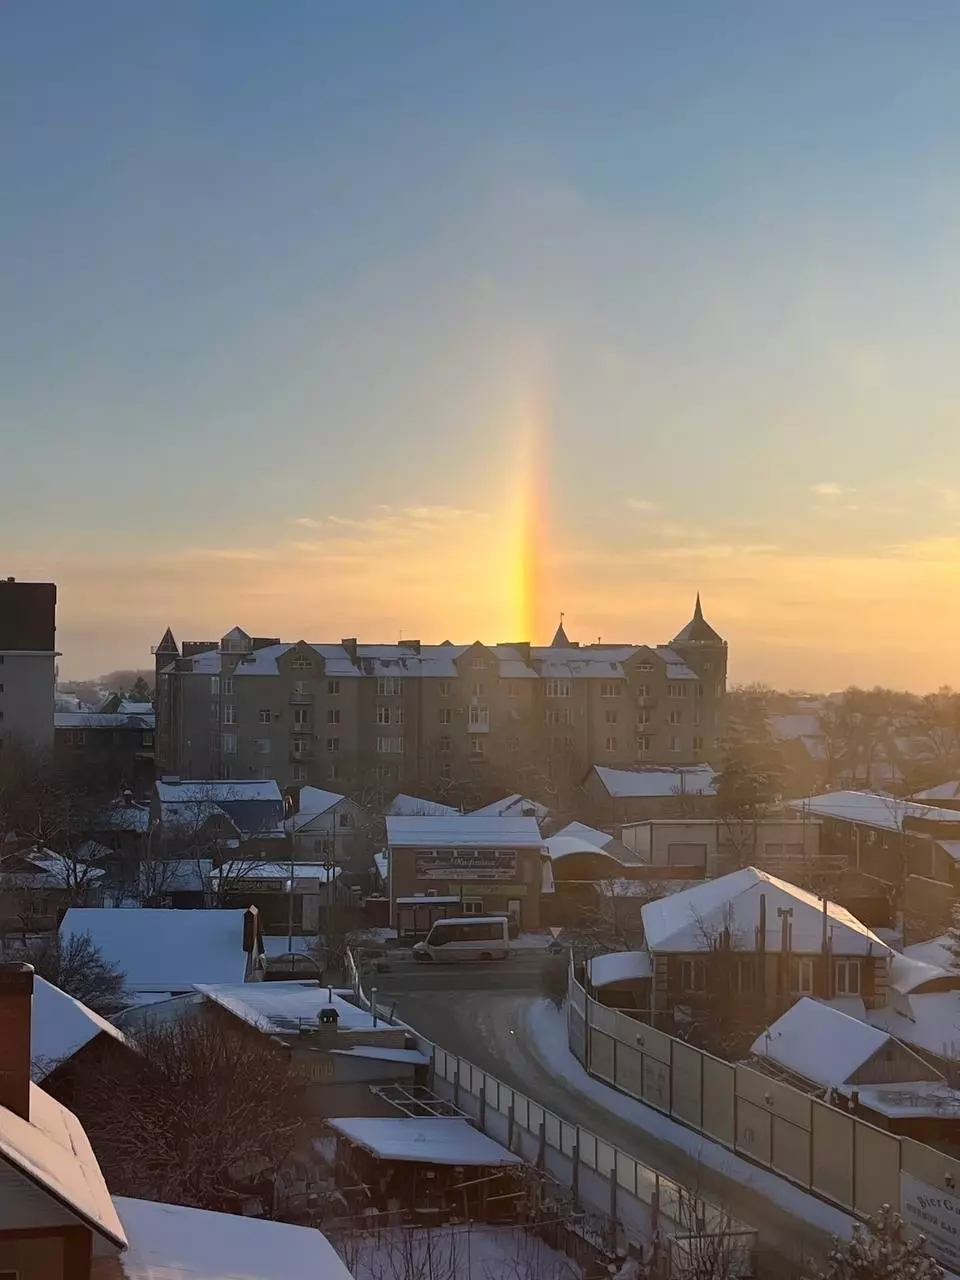 «Волшебное утро»: жителей Ставрополя восхитили три солнца в утреннем небе2